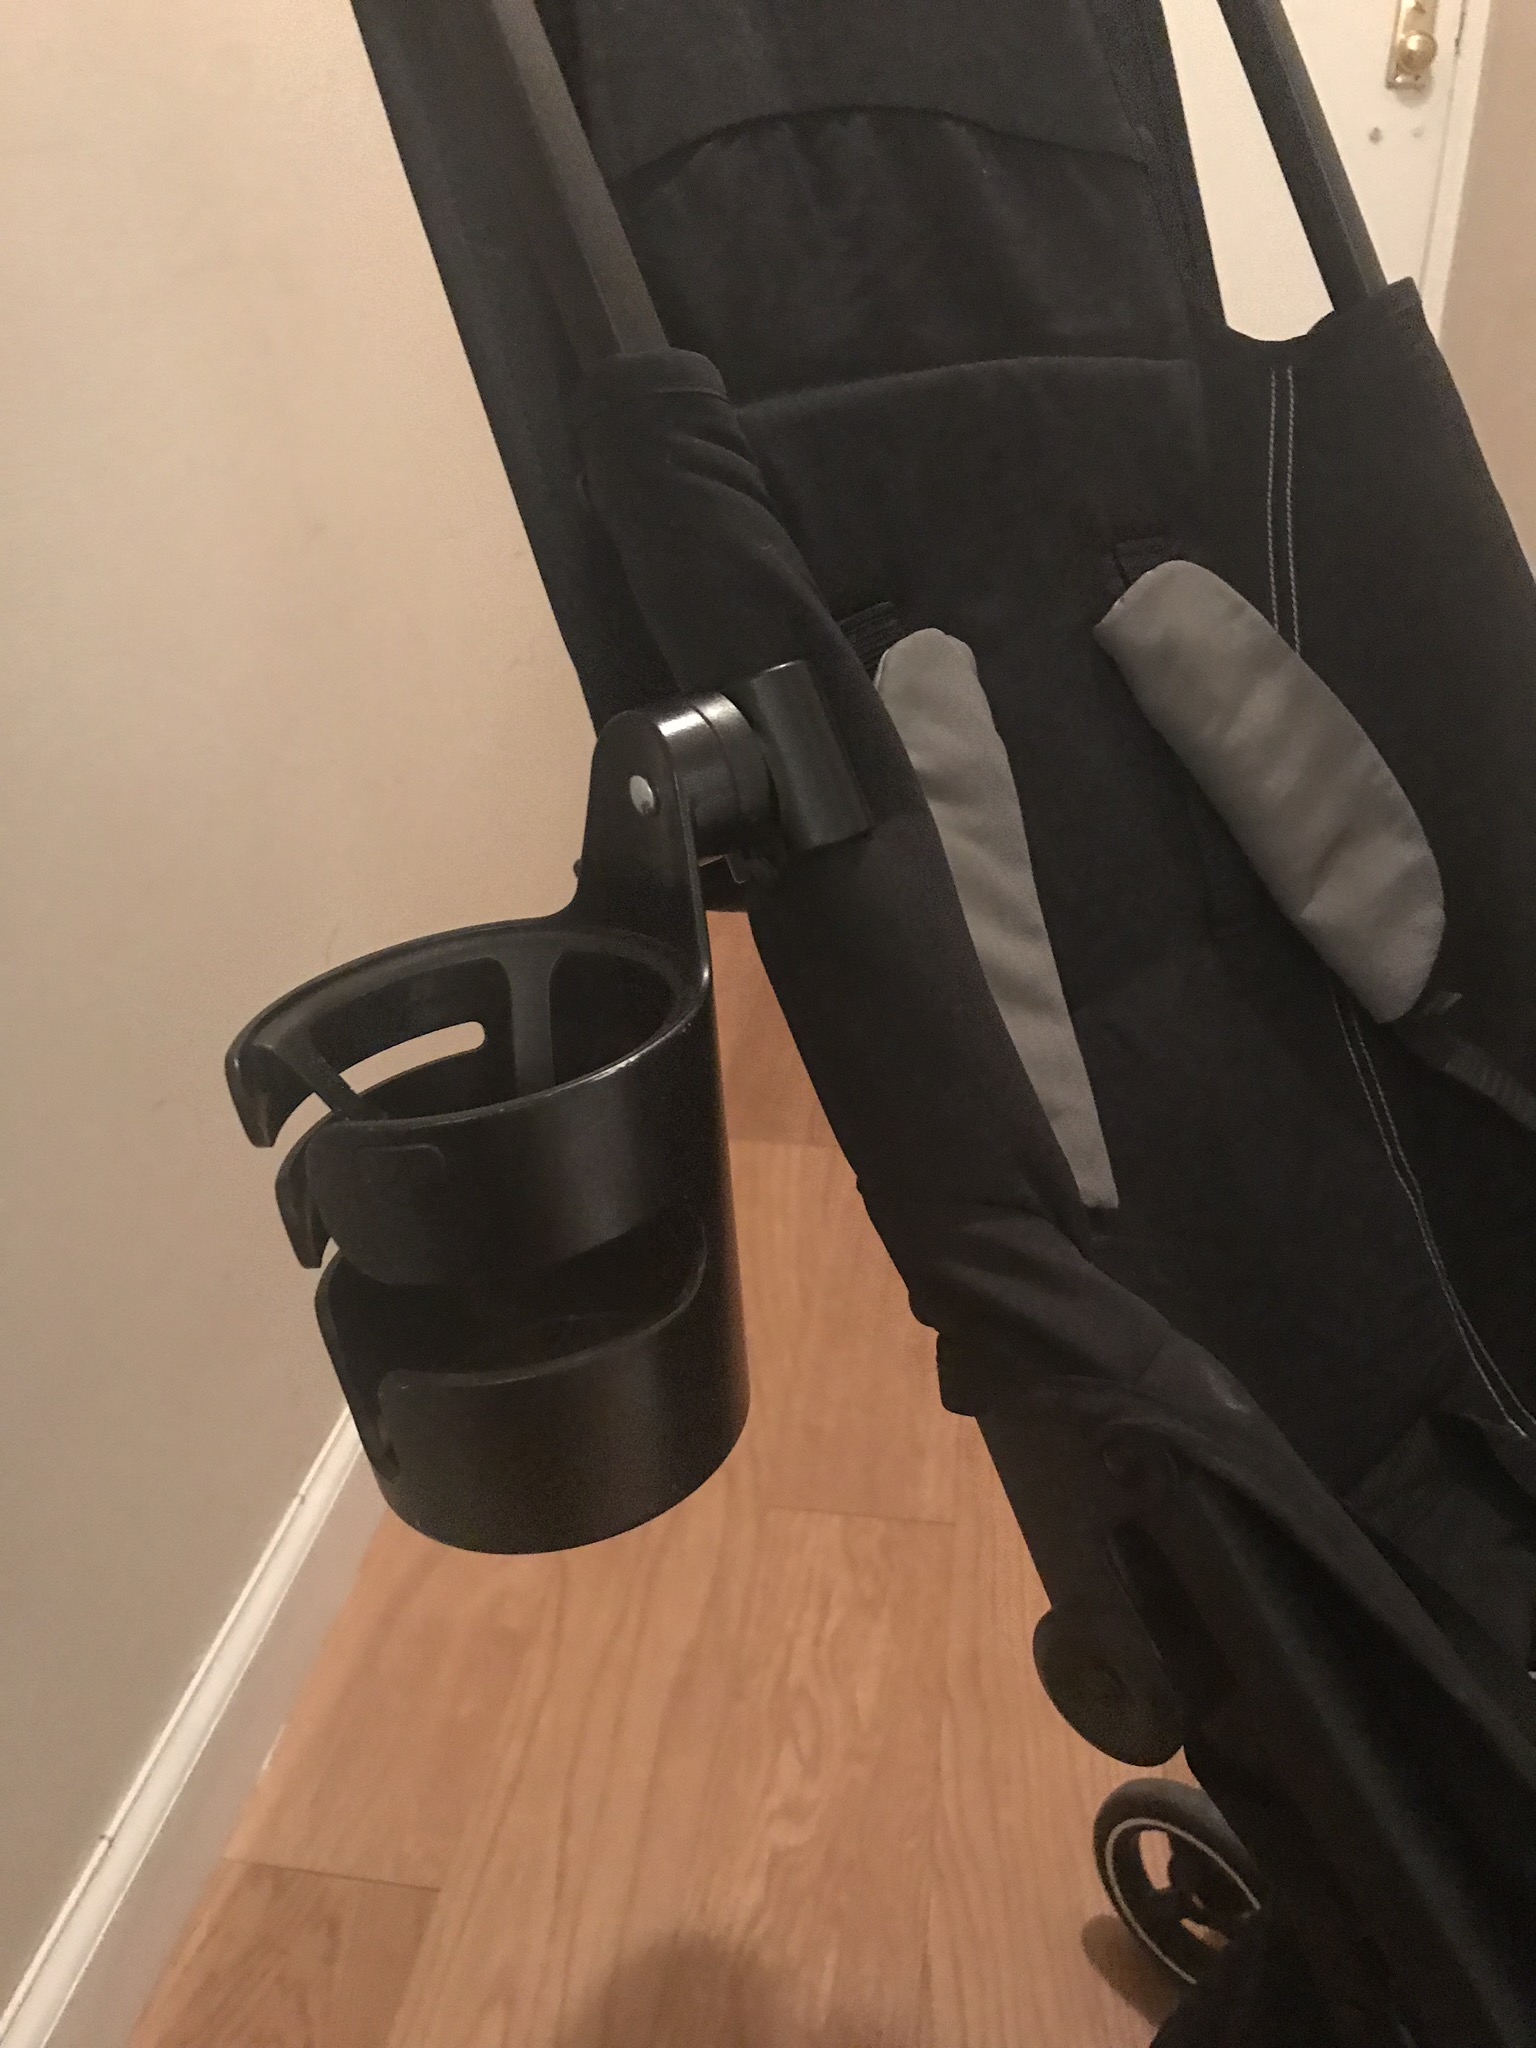 gb pockit stroller cup holder